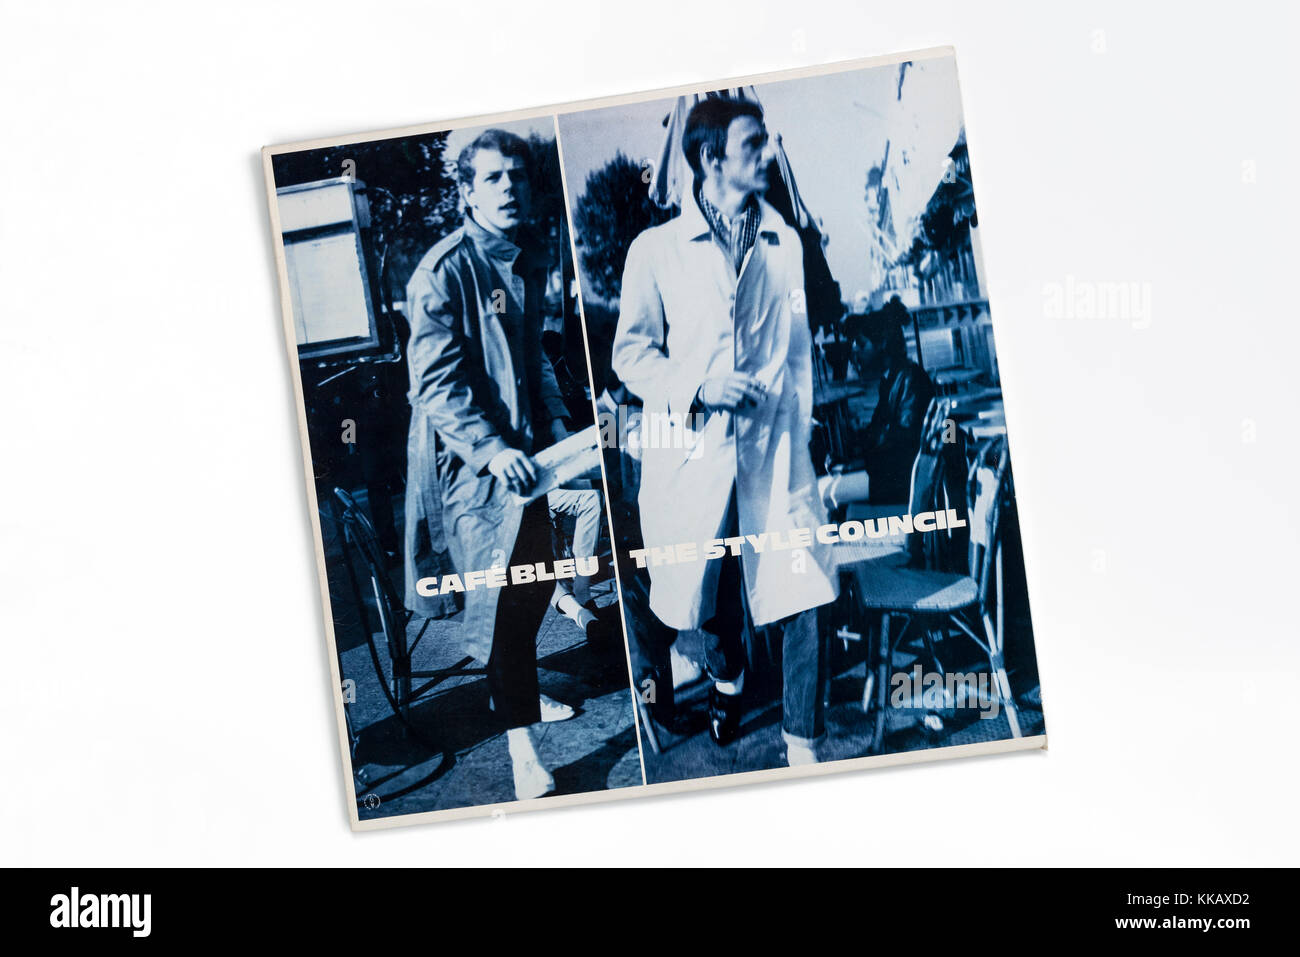 Paul Weller, Style Council, Café Bleu,couverture de l'album 1984. Banque D'Images